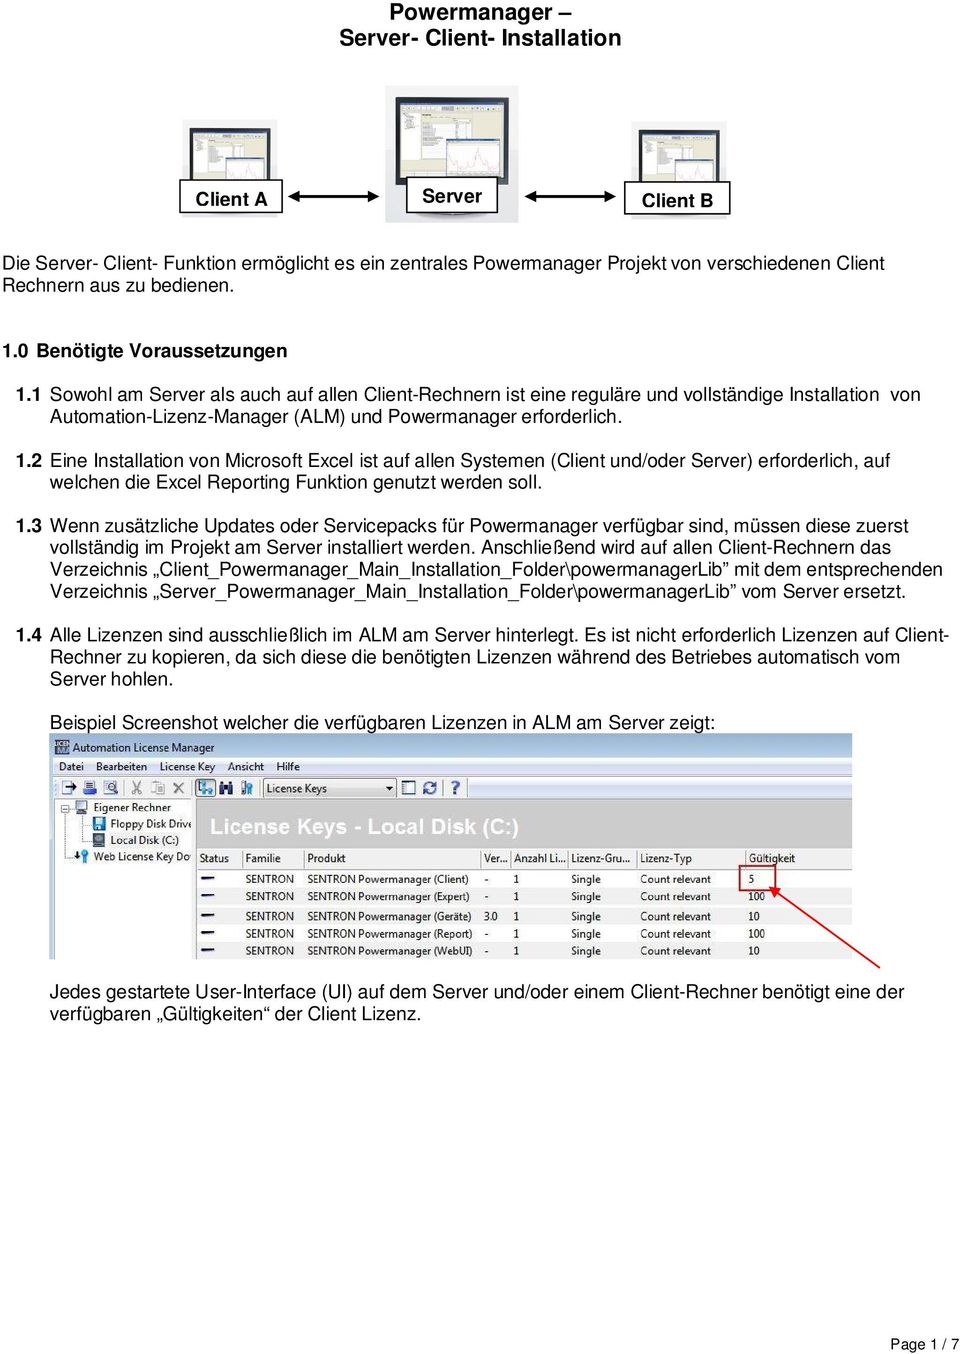 2 Eine Installation von Microsoft Excel ist auf allen Systemen (Client und/oder Server) erforderlich, auf welchen die Excel Reporting Funktion genutzt werden soll. 1.